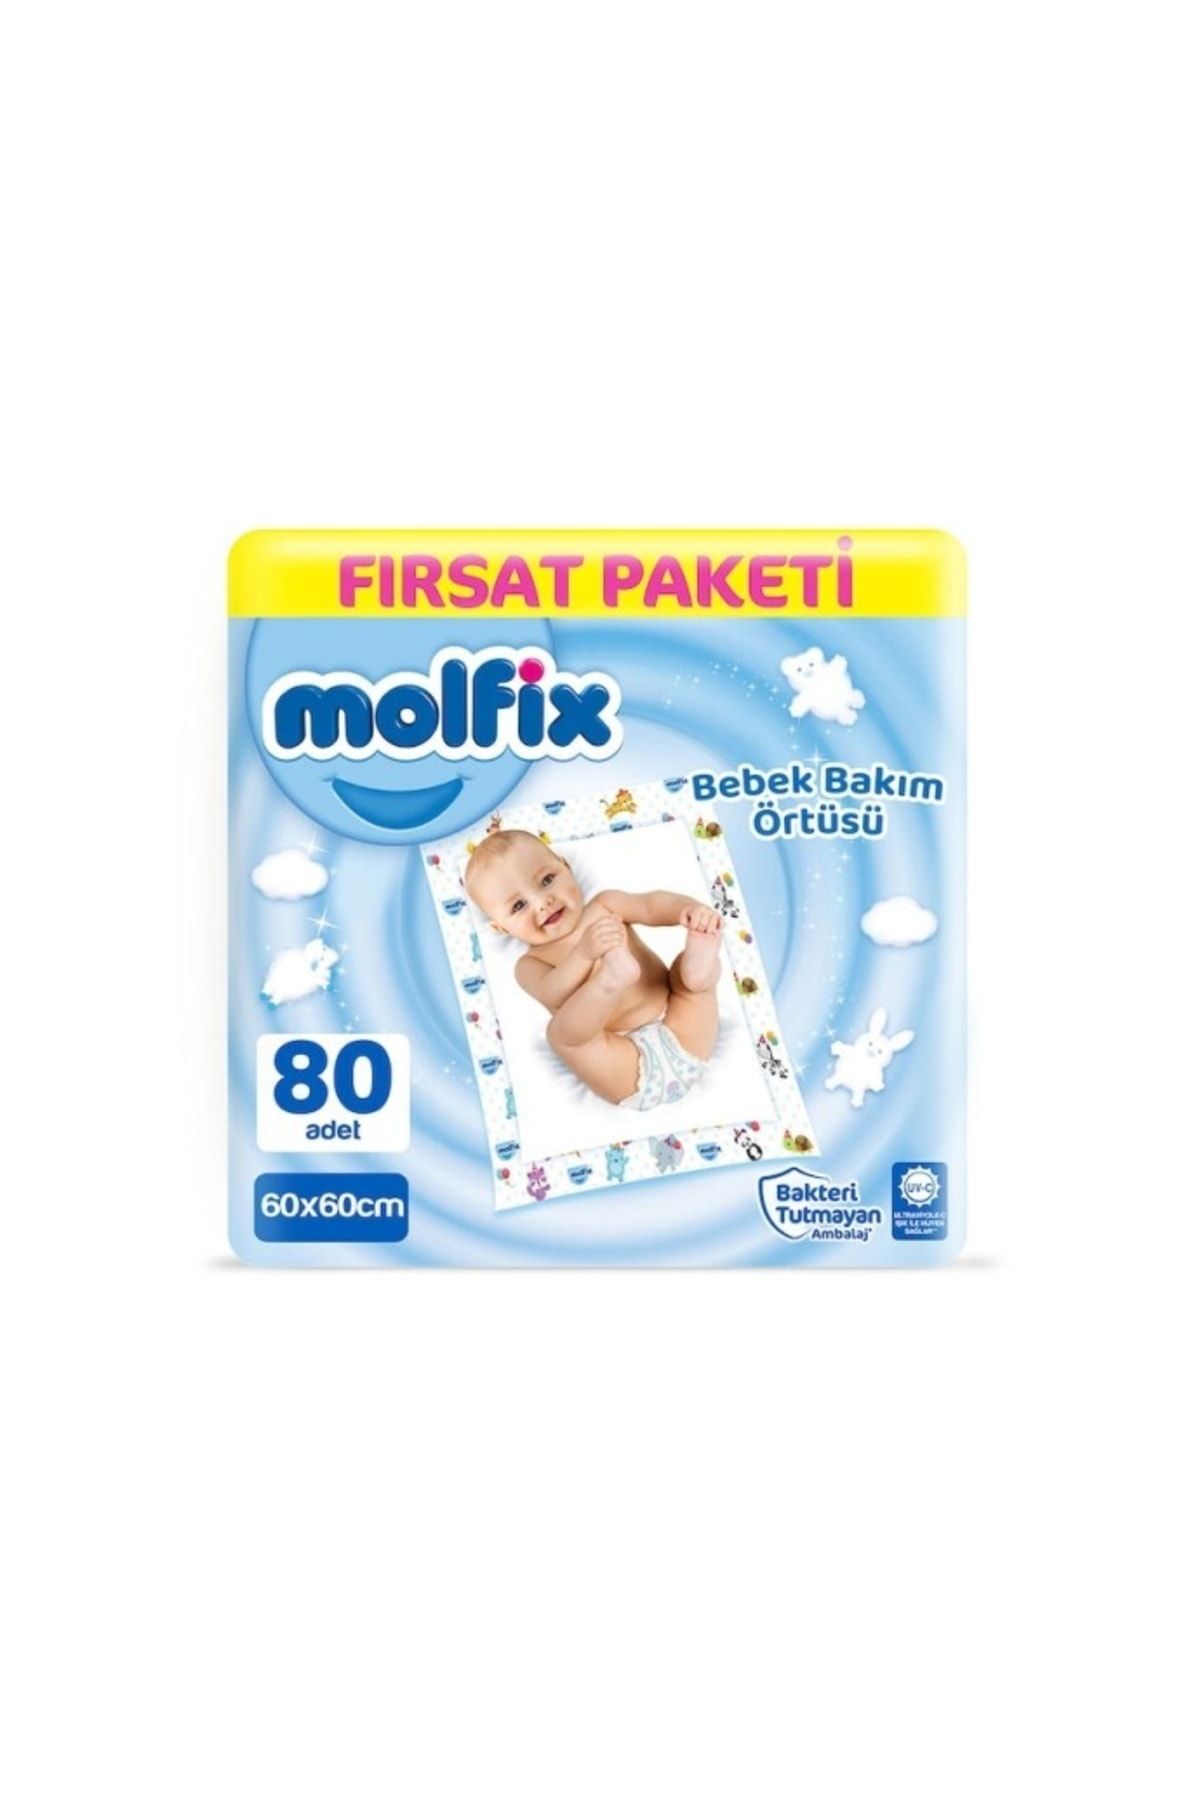 Molfix Bebek Bakım Örtüsü 60 X 60 Cm Fırsat Paketi 80 Adet